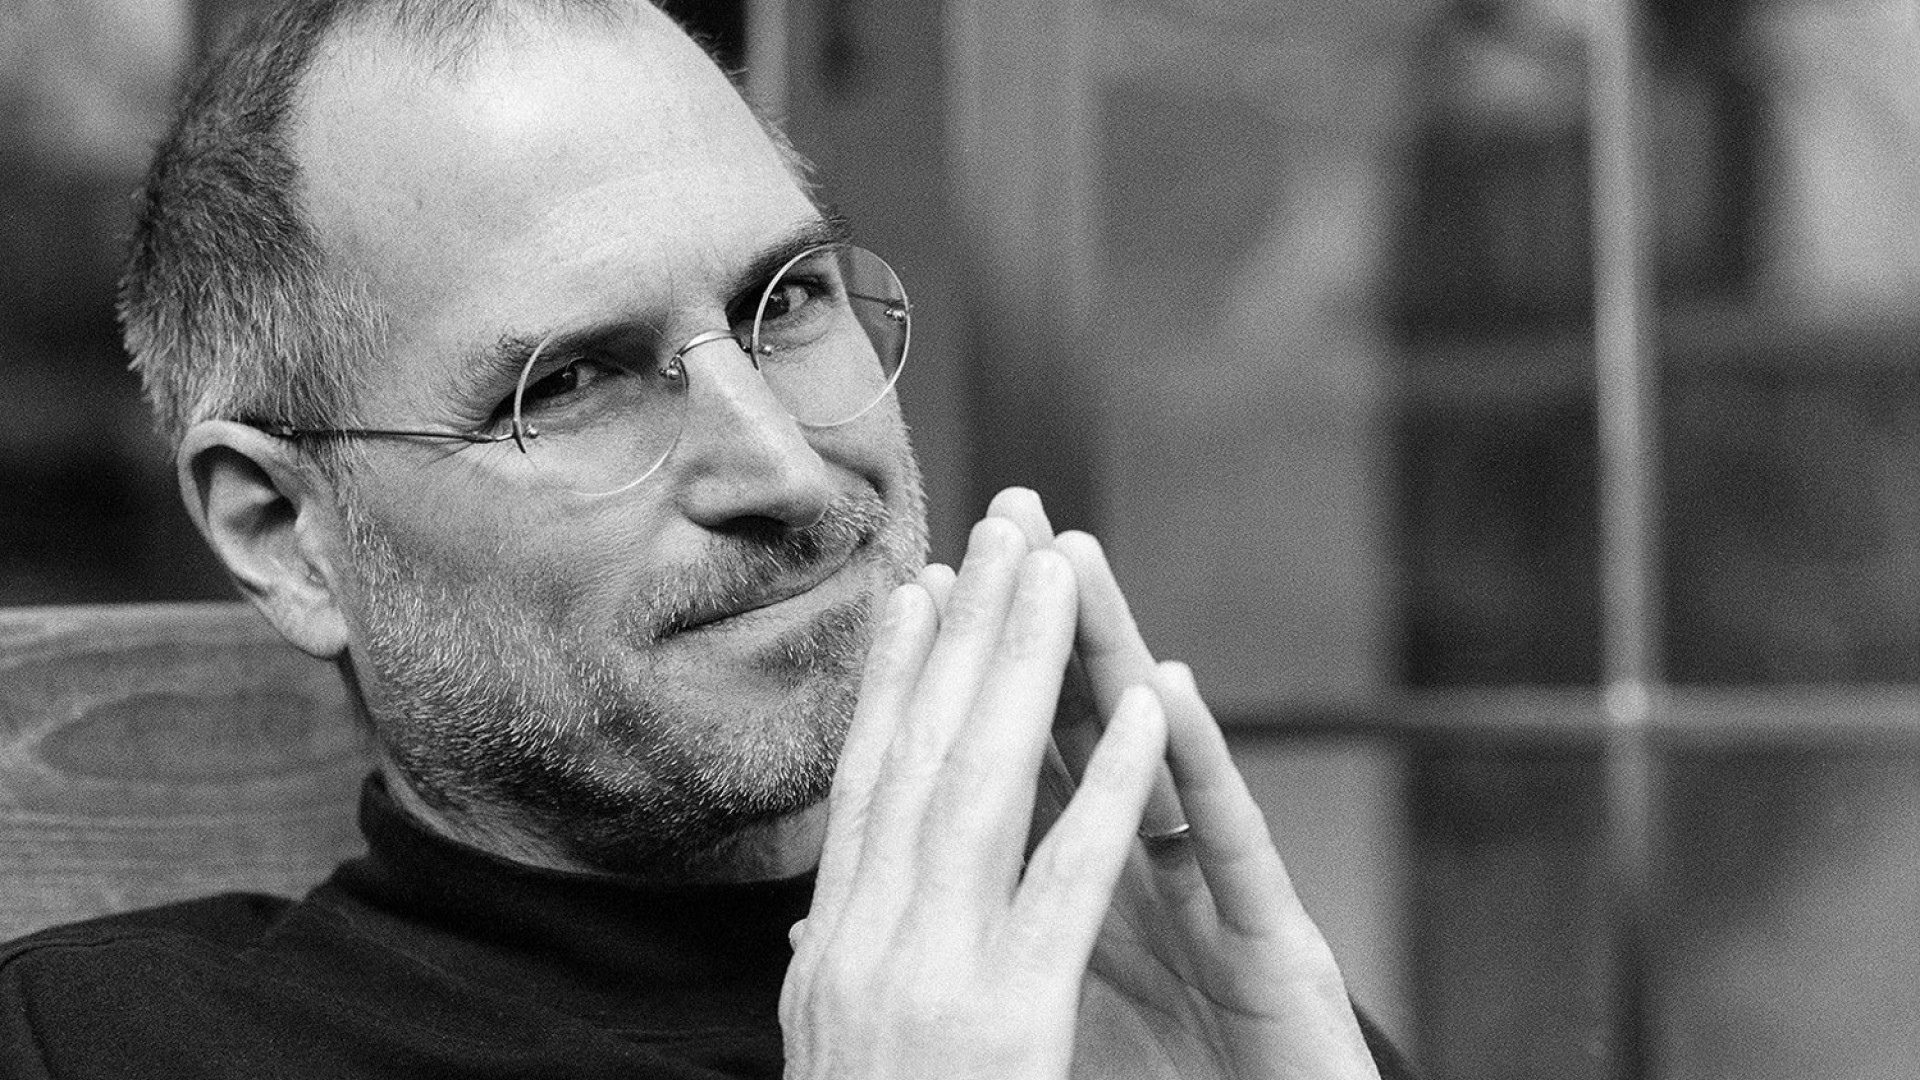 รีวิวหนัง Steve Jobs - สตีฟ จ็อบส์ บุรุษอัจฉริยะ เบื้องหลังการปฏิวัติโลกดิจิตอล